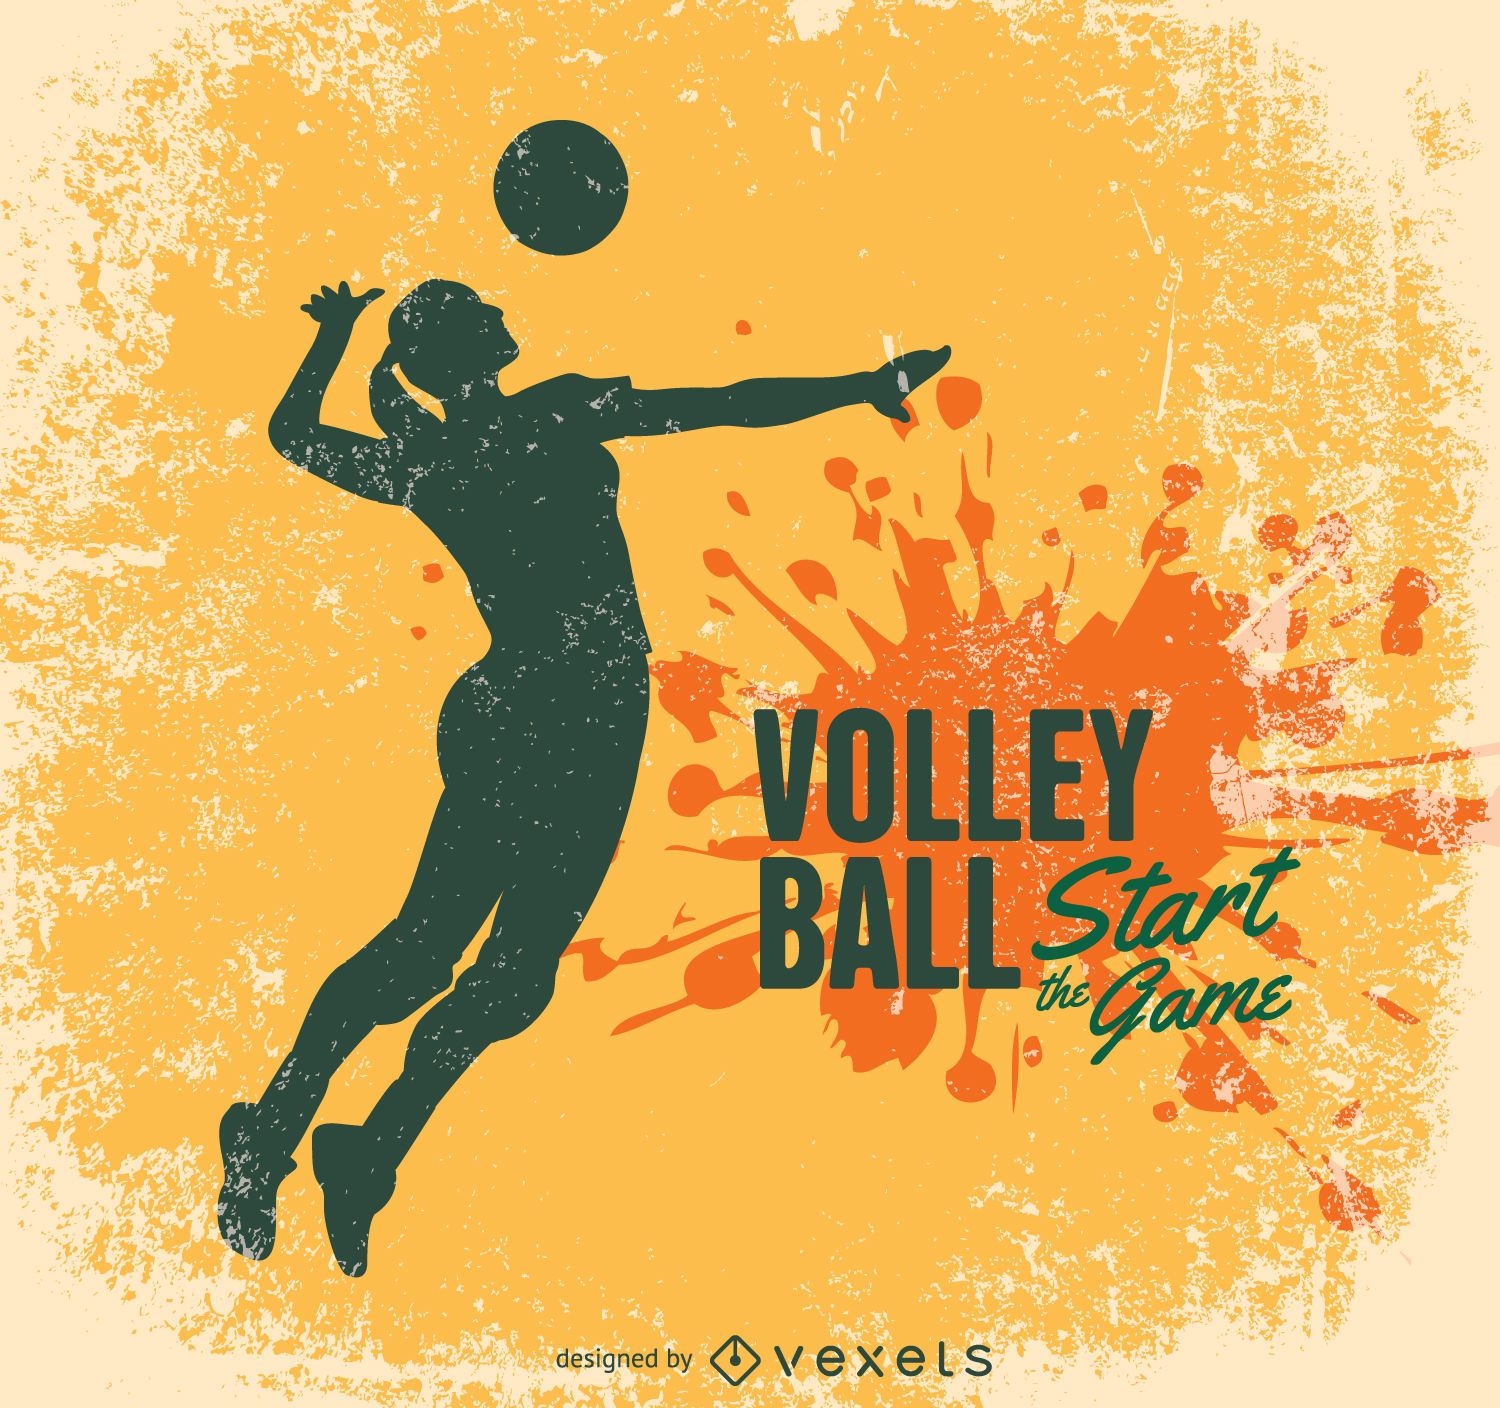 Volleyball-Grunge-Design